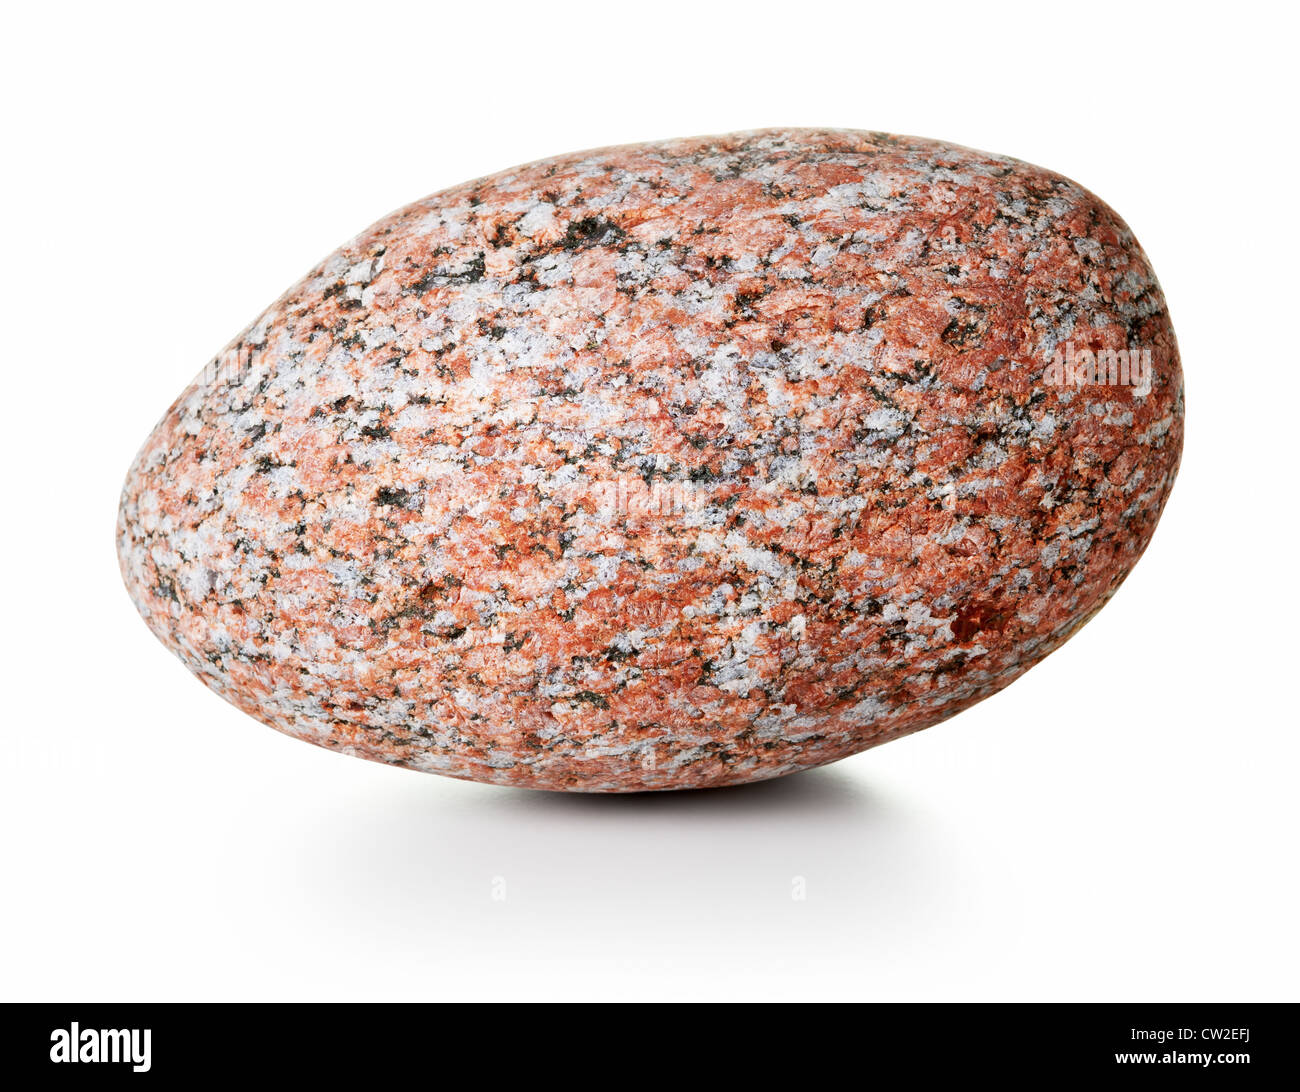 Big granite stone on white background, studio shot Stock Photo